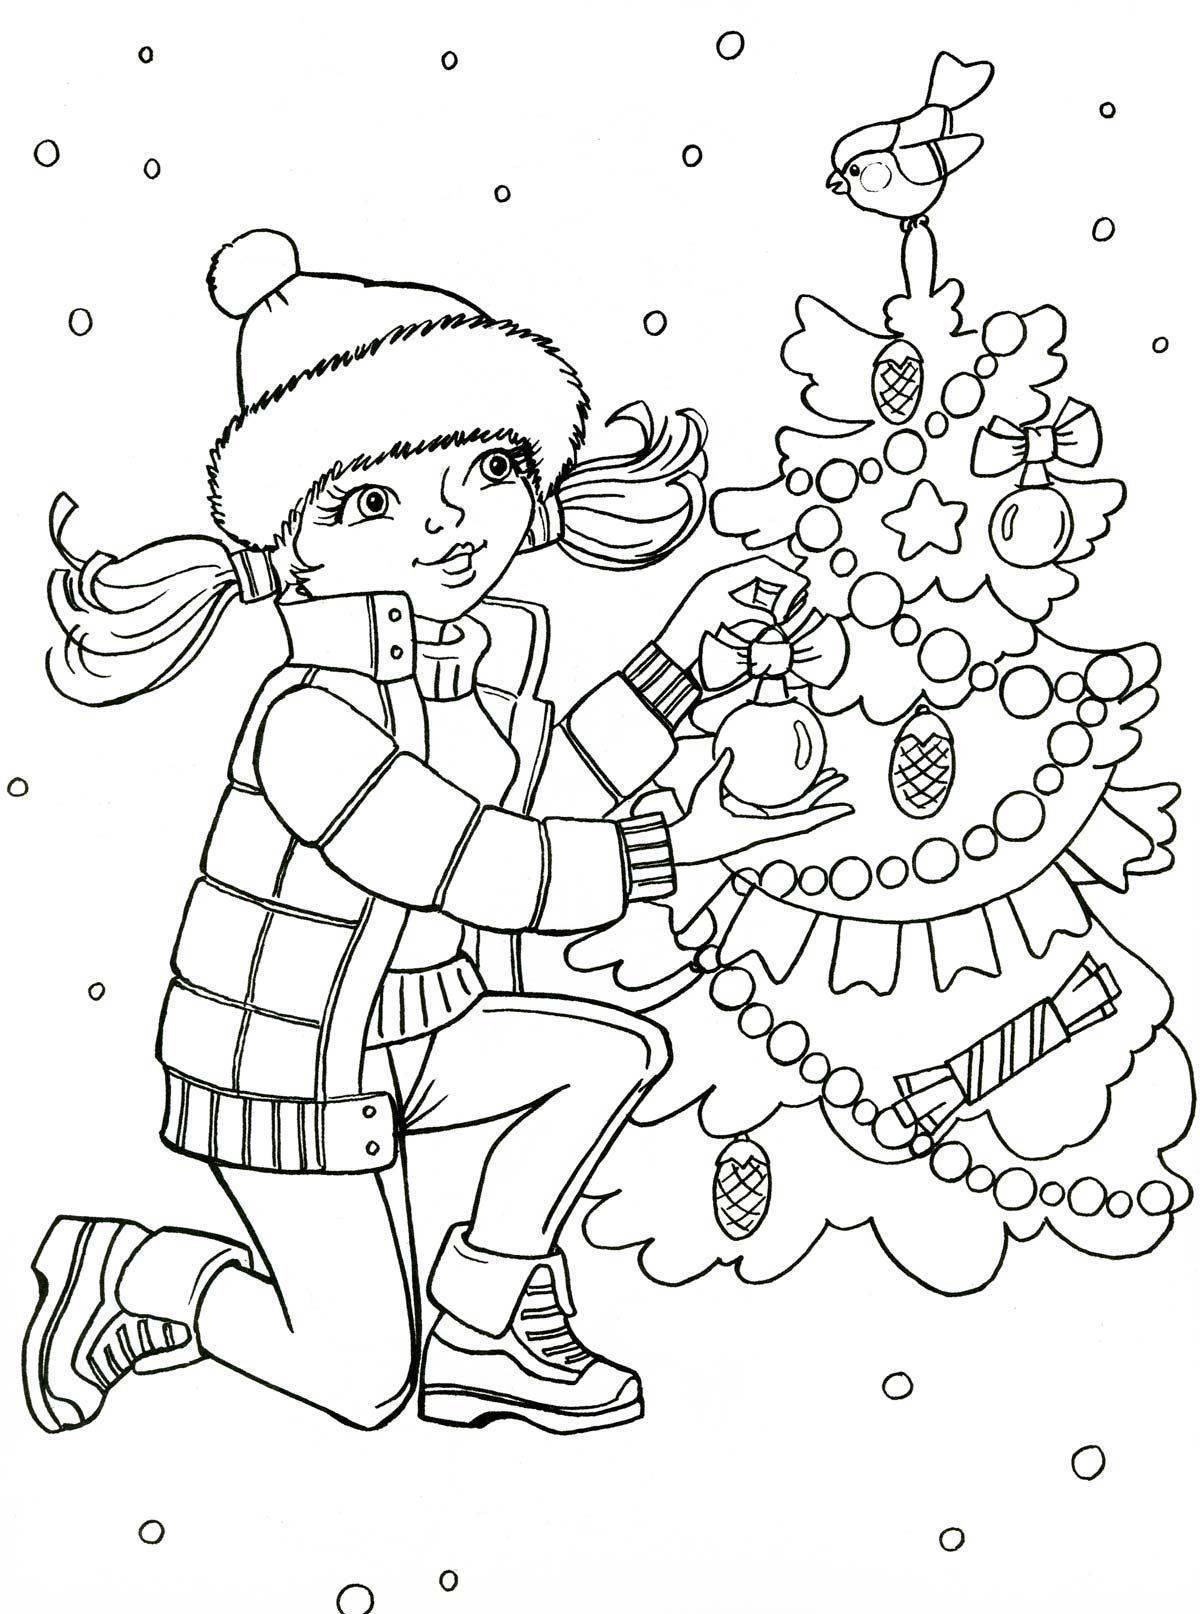 Иллюстрация Зима... :) в стиле анимационный | Illustrators.ru